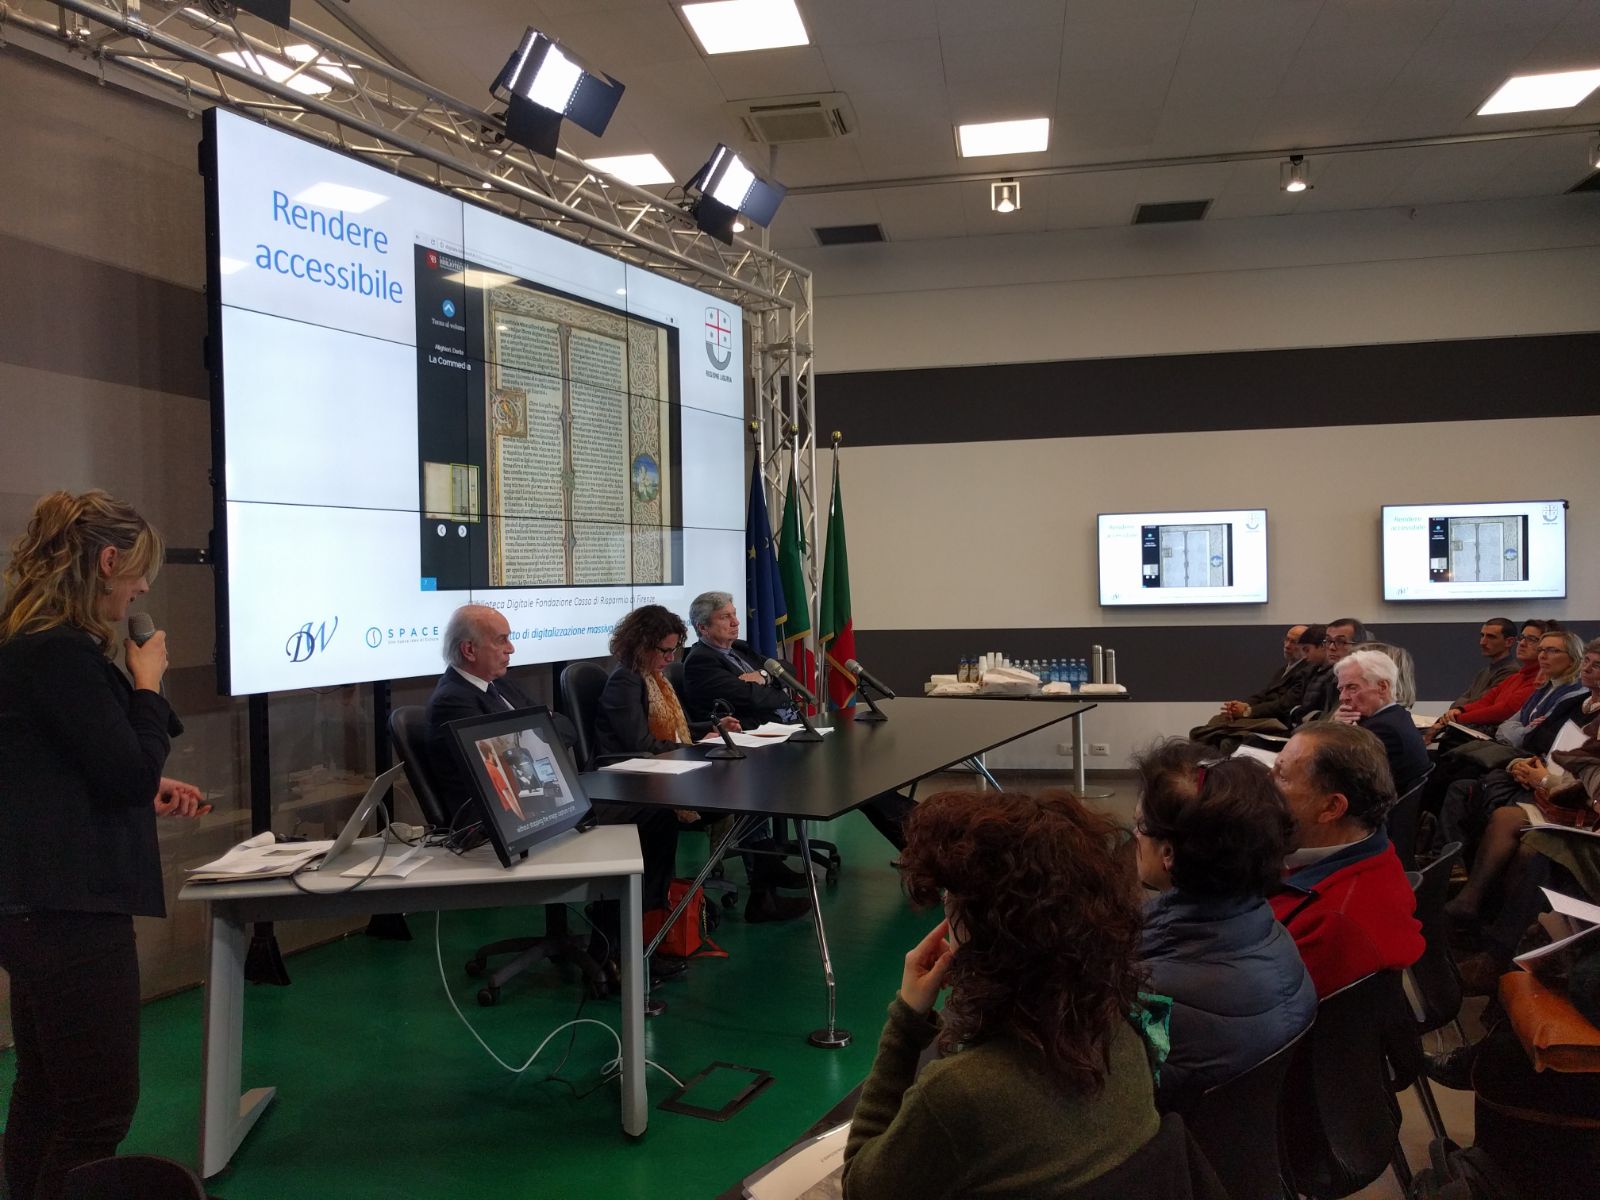 La Regione Liguria avvia un ambizioso progetto di digitalizzazione massiva del suo patrimonio bibliografico ed archivistico